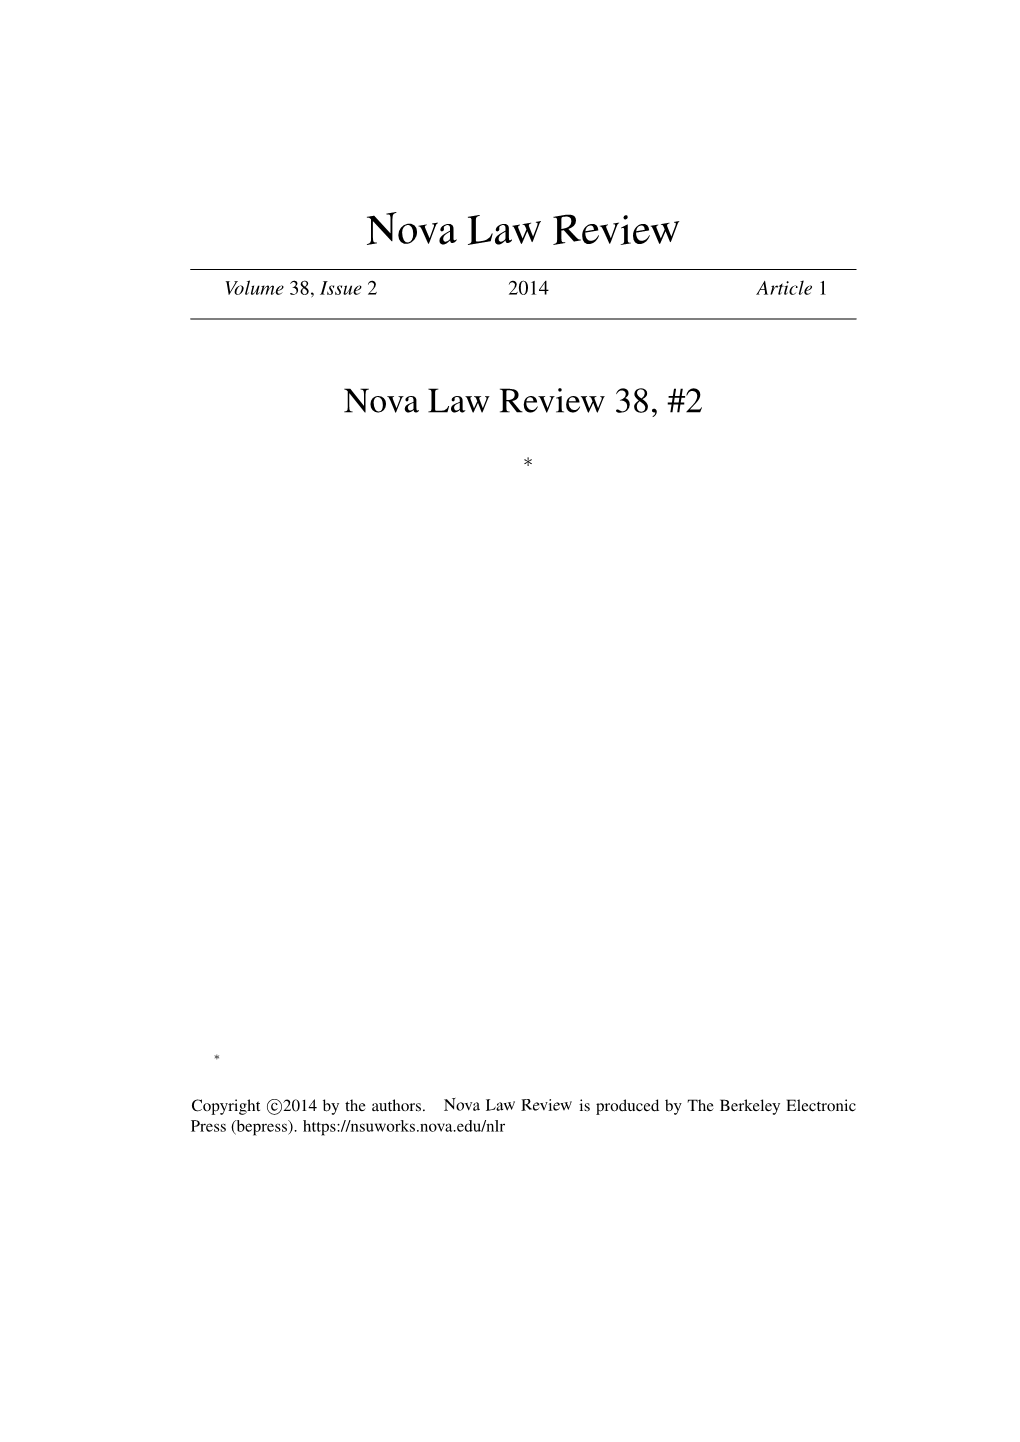 Nova Law Review 38, #2